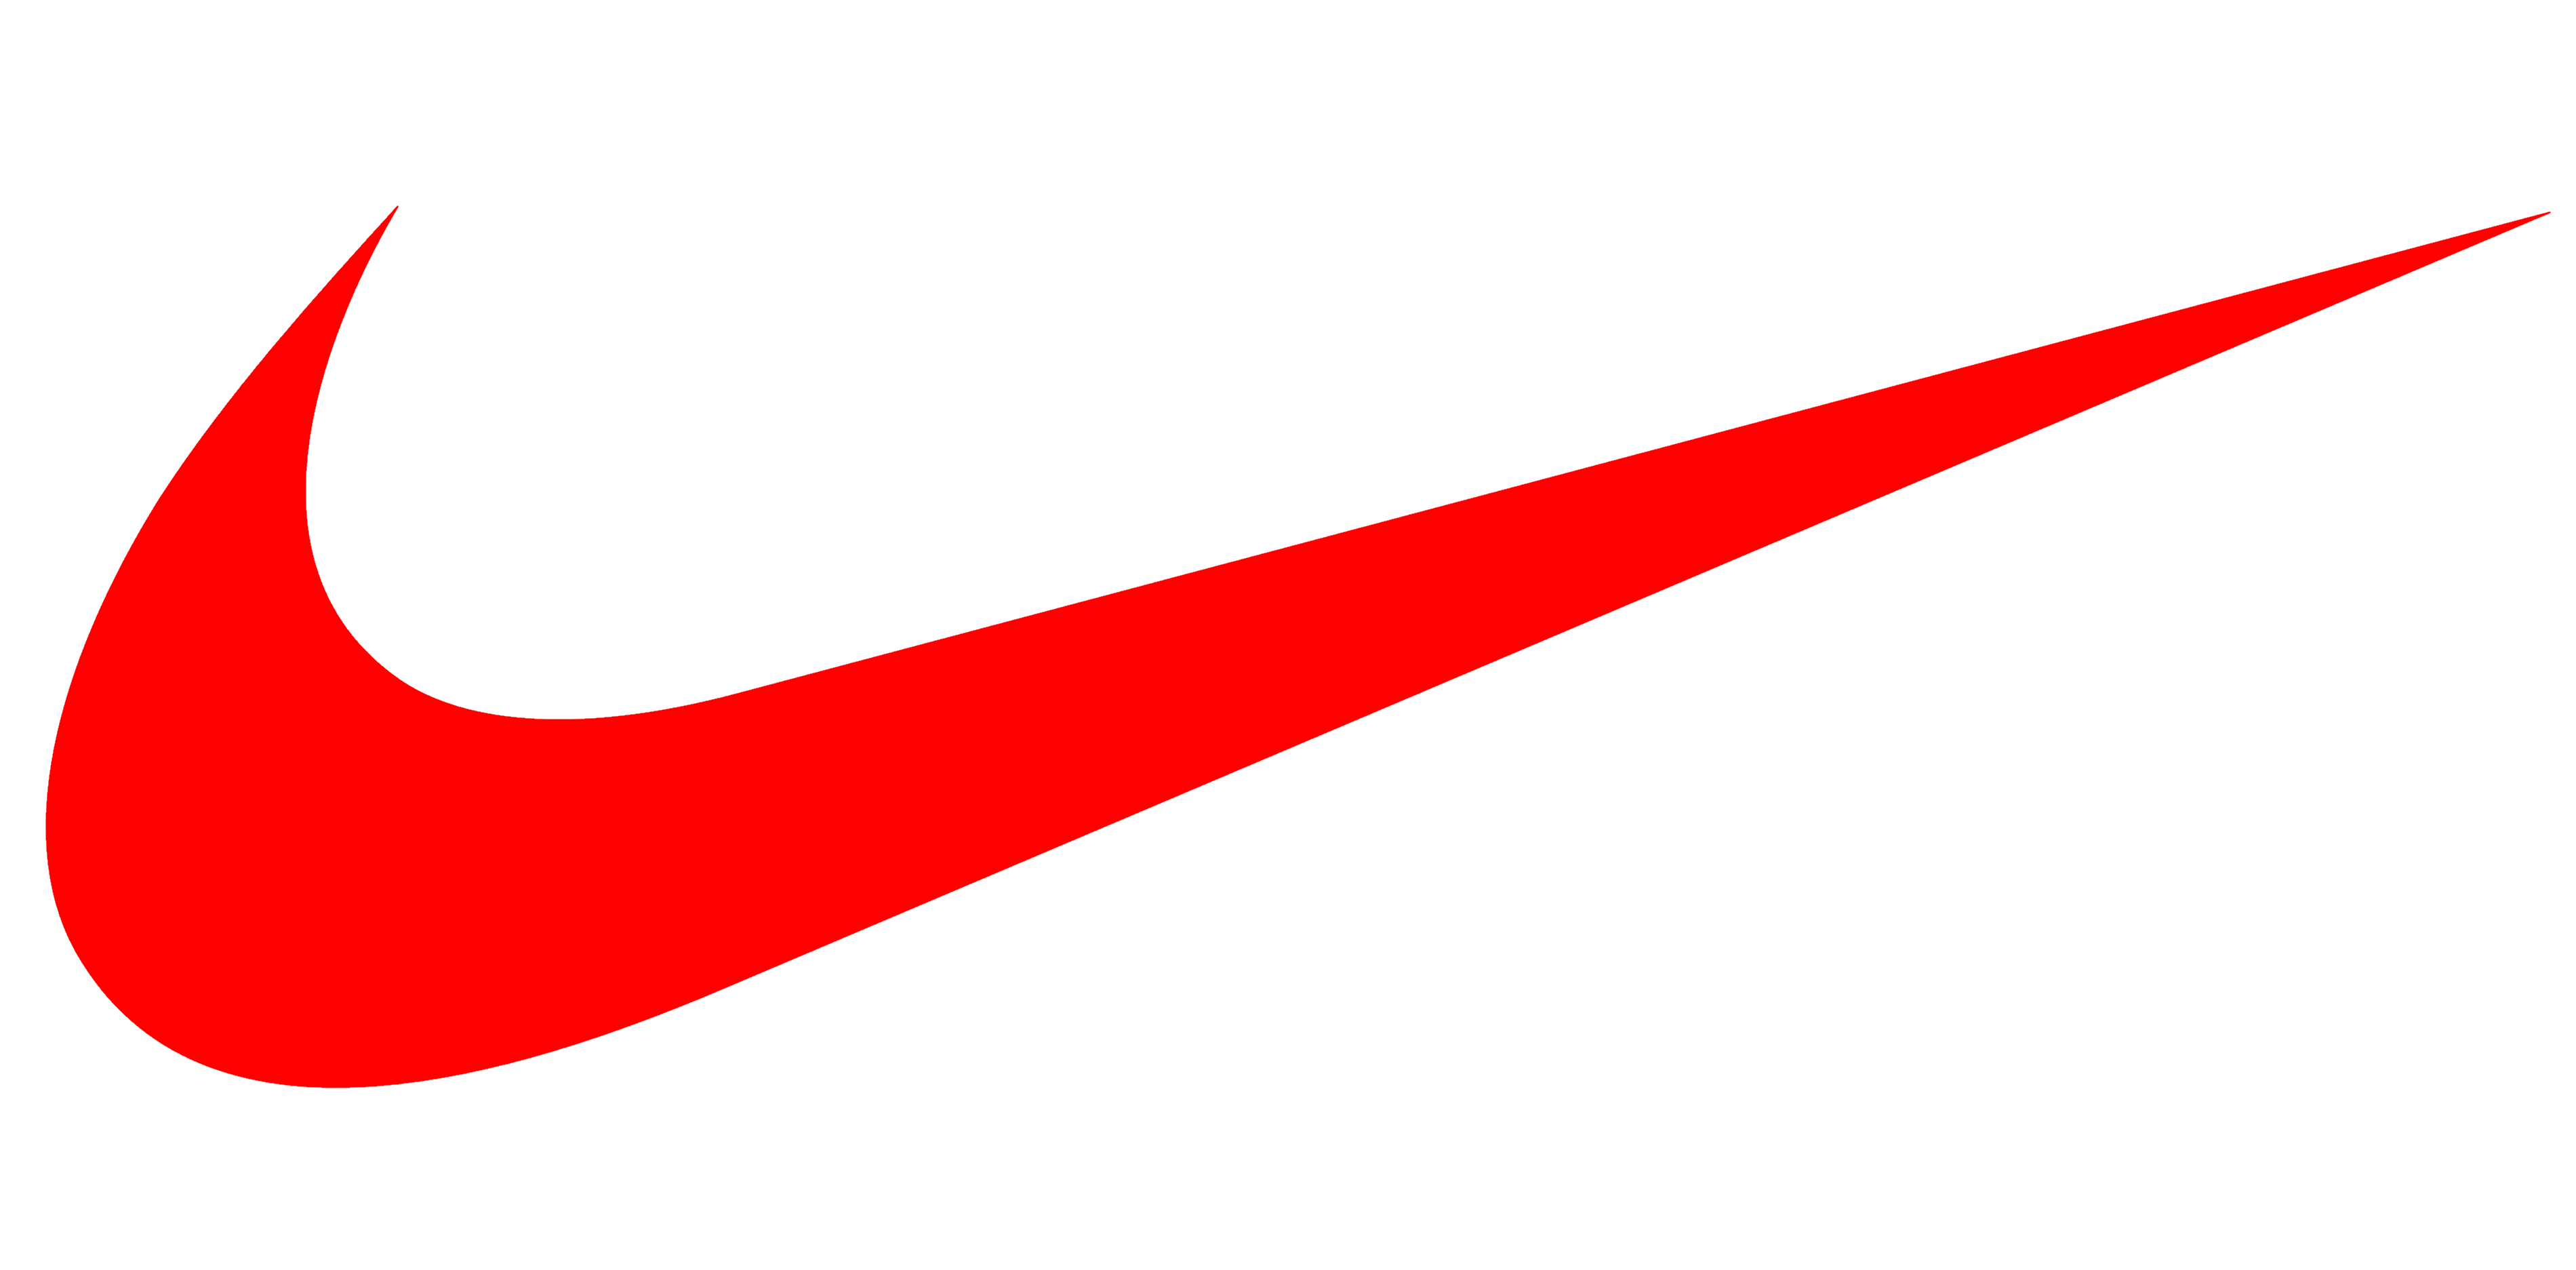 Printable Nike Logo - Printable Templates